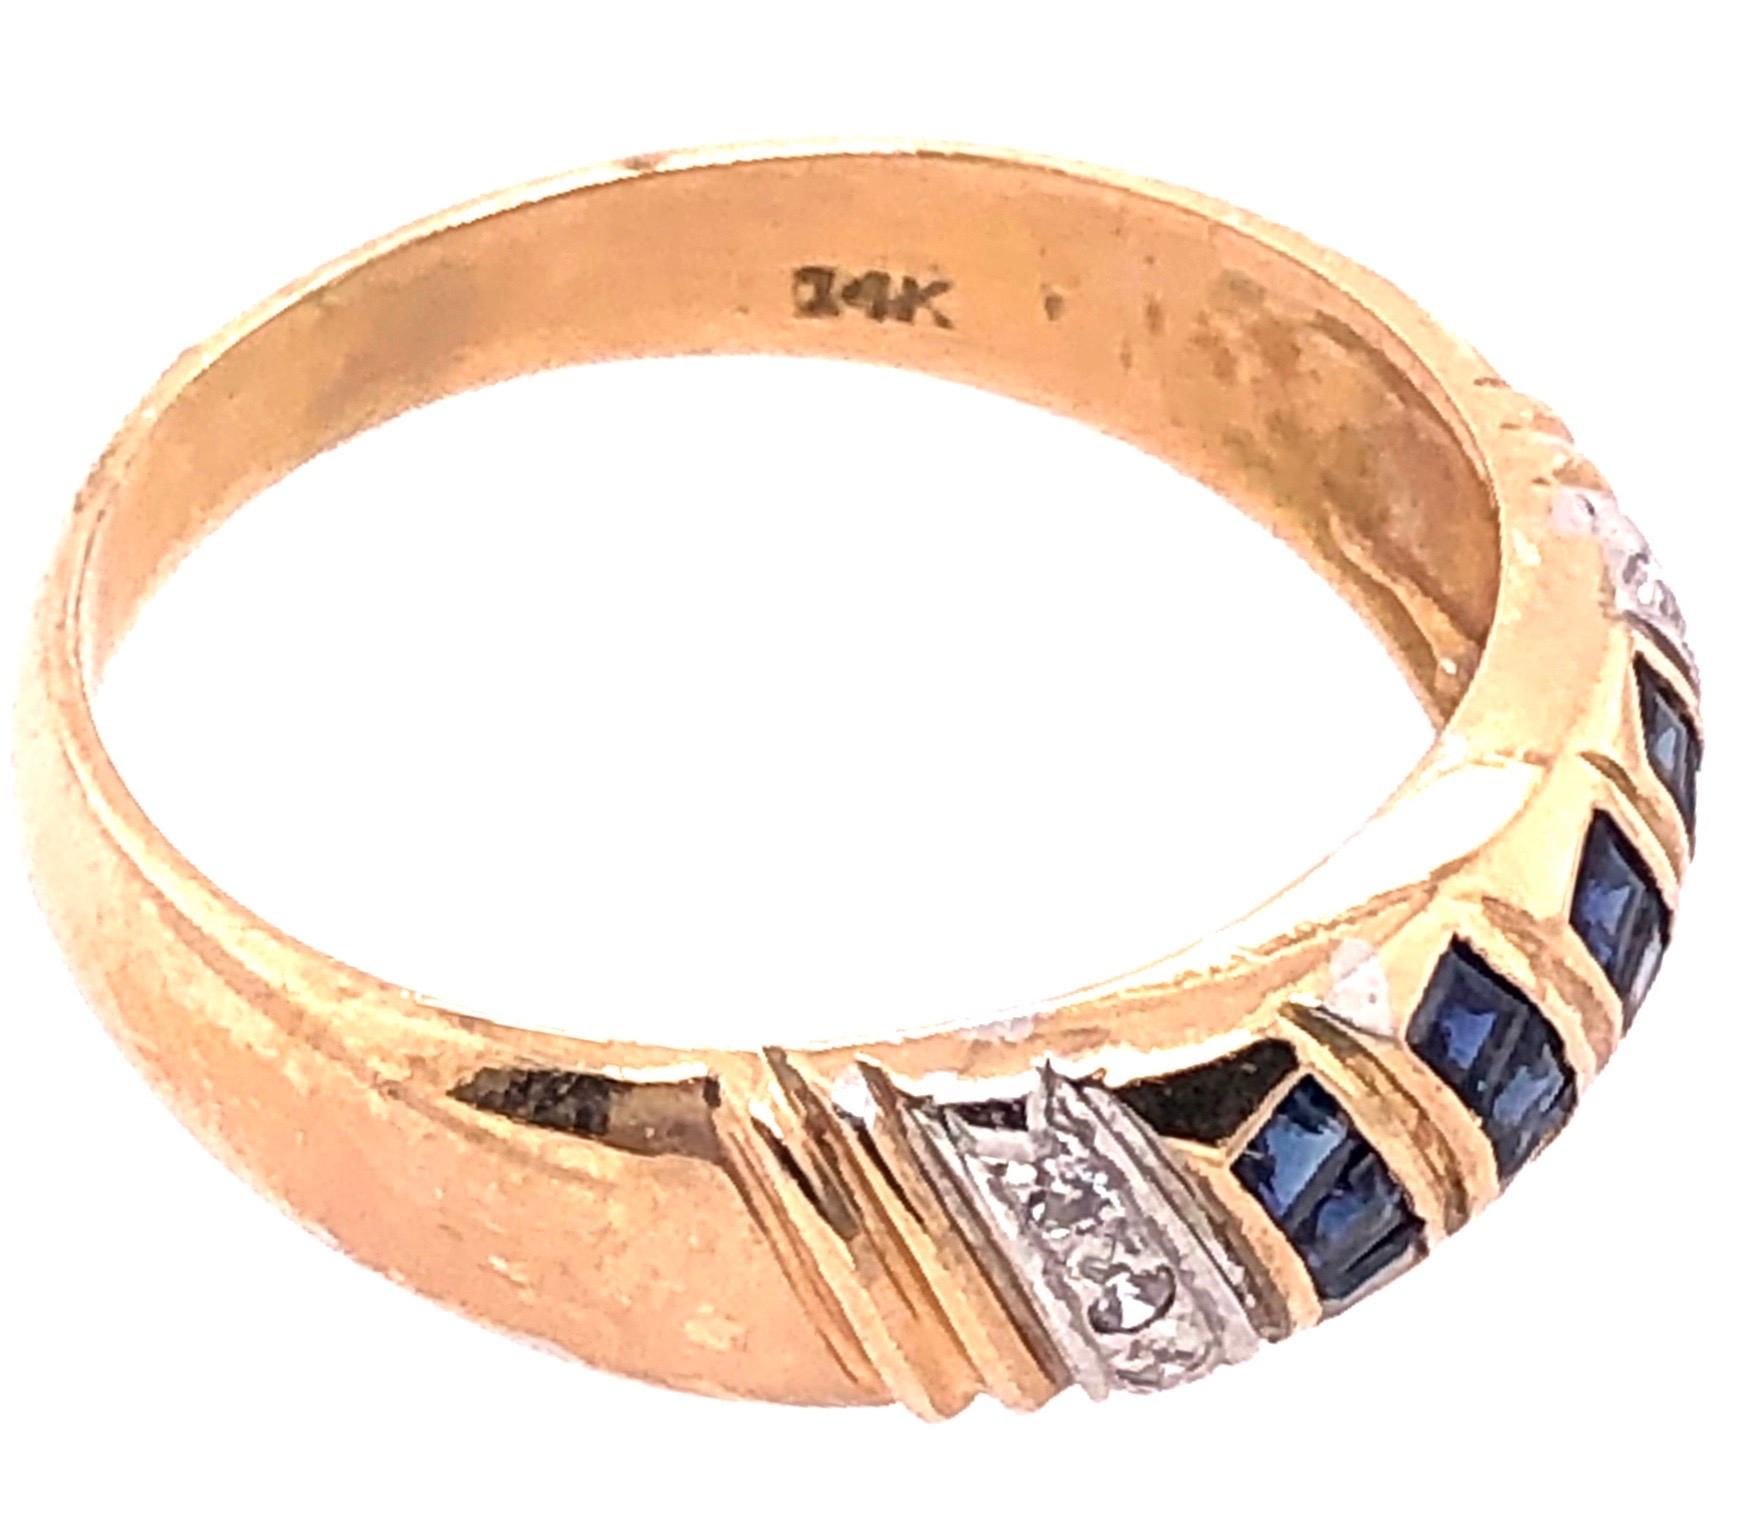 14 Karat Yellow Gold Fashion Ring.
Size 8.25
2.45 grams total weight.